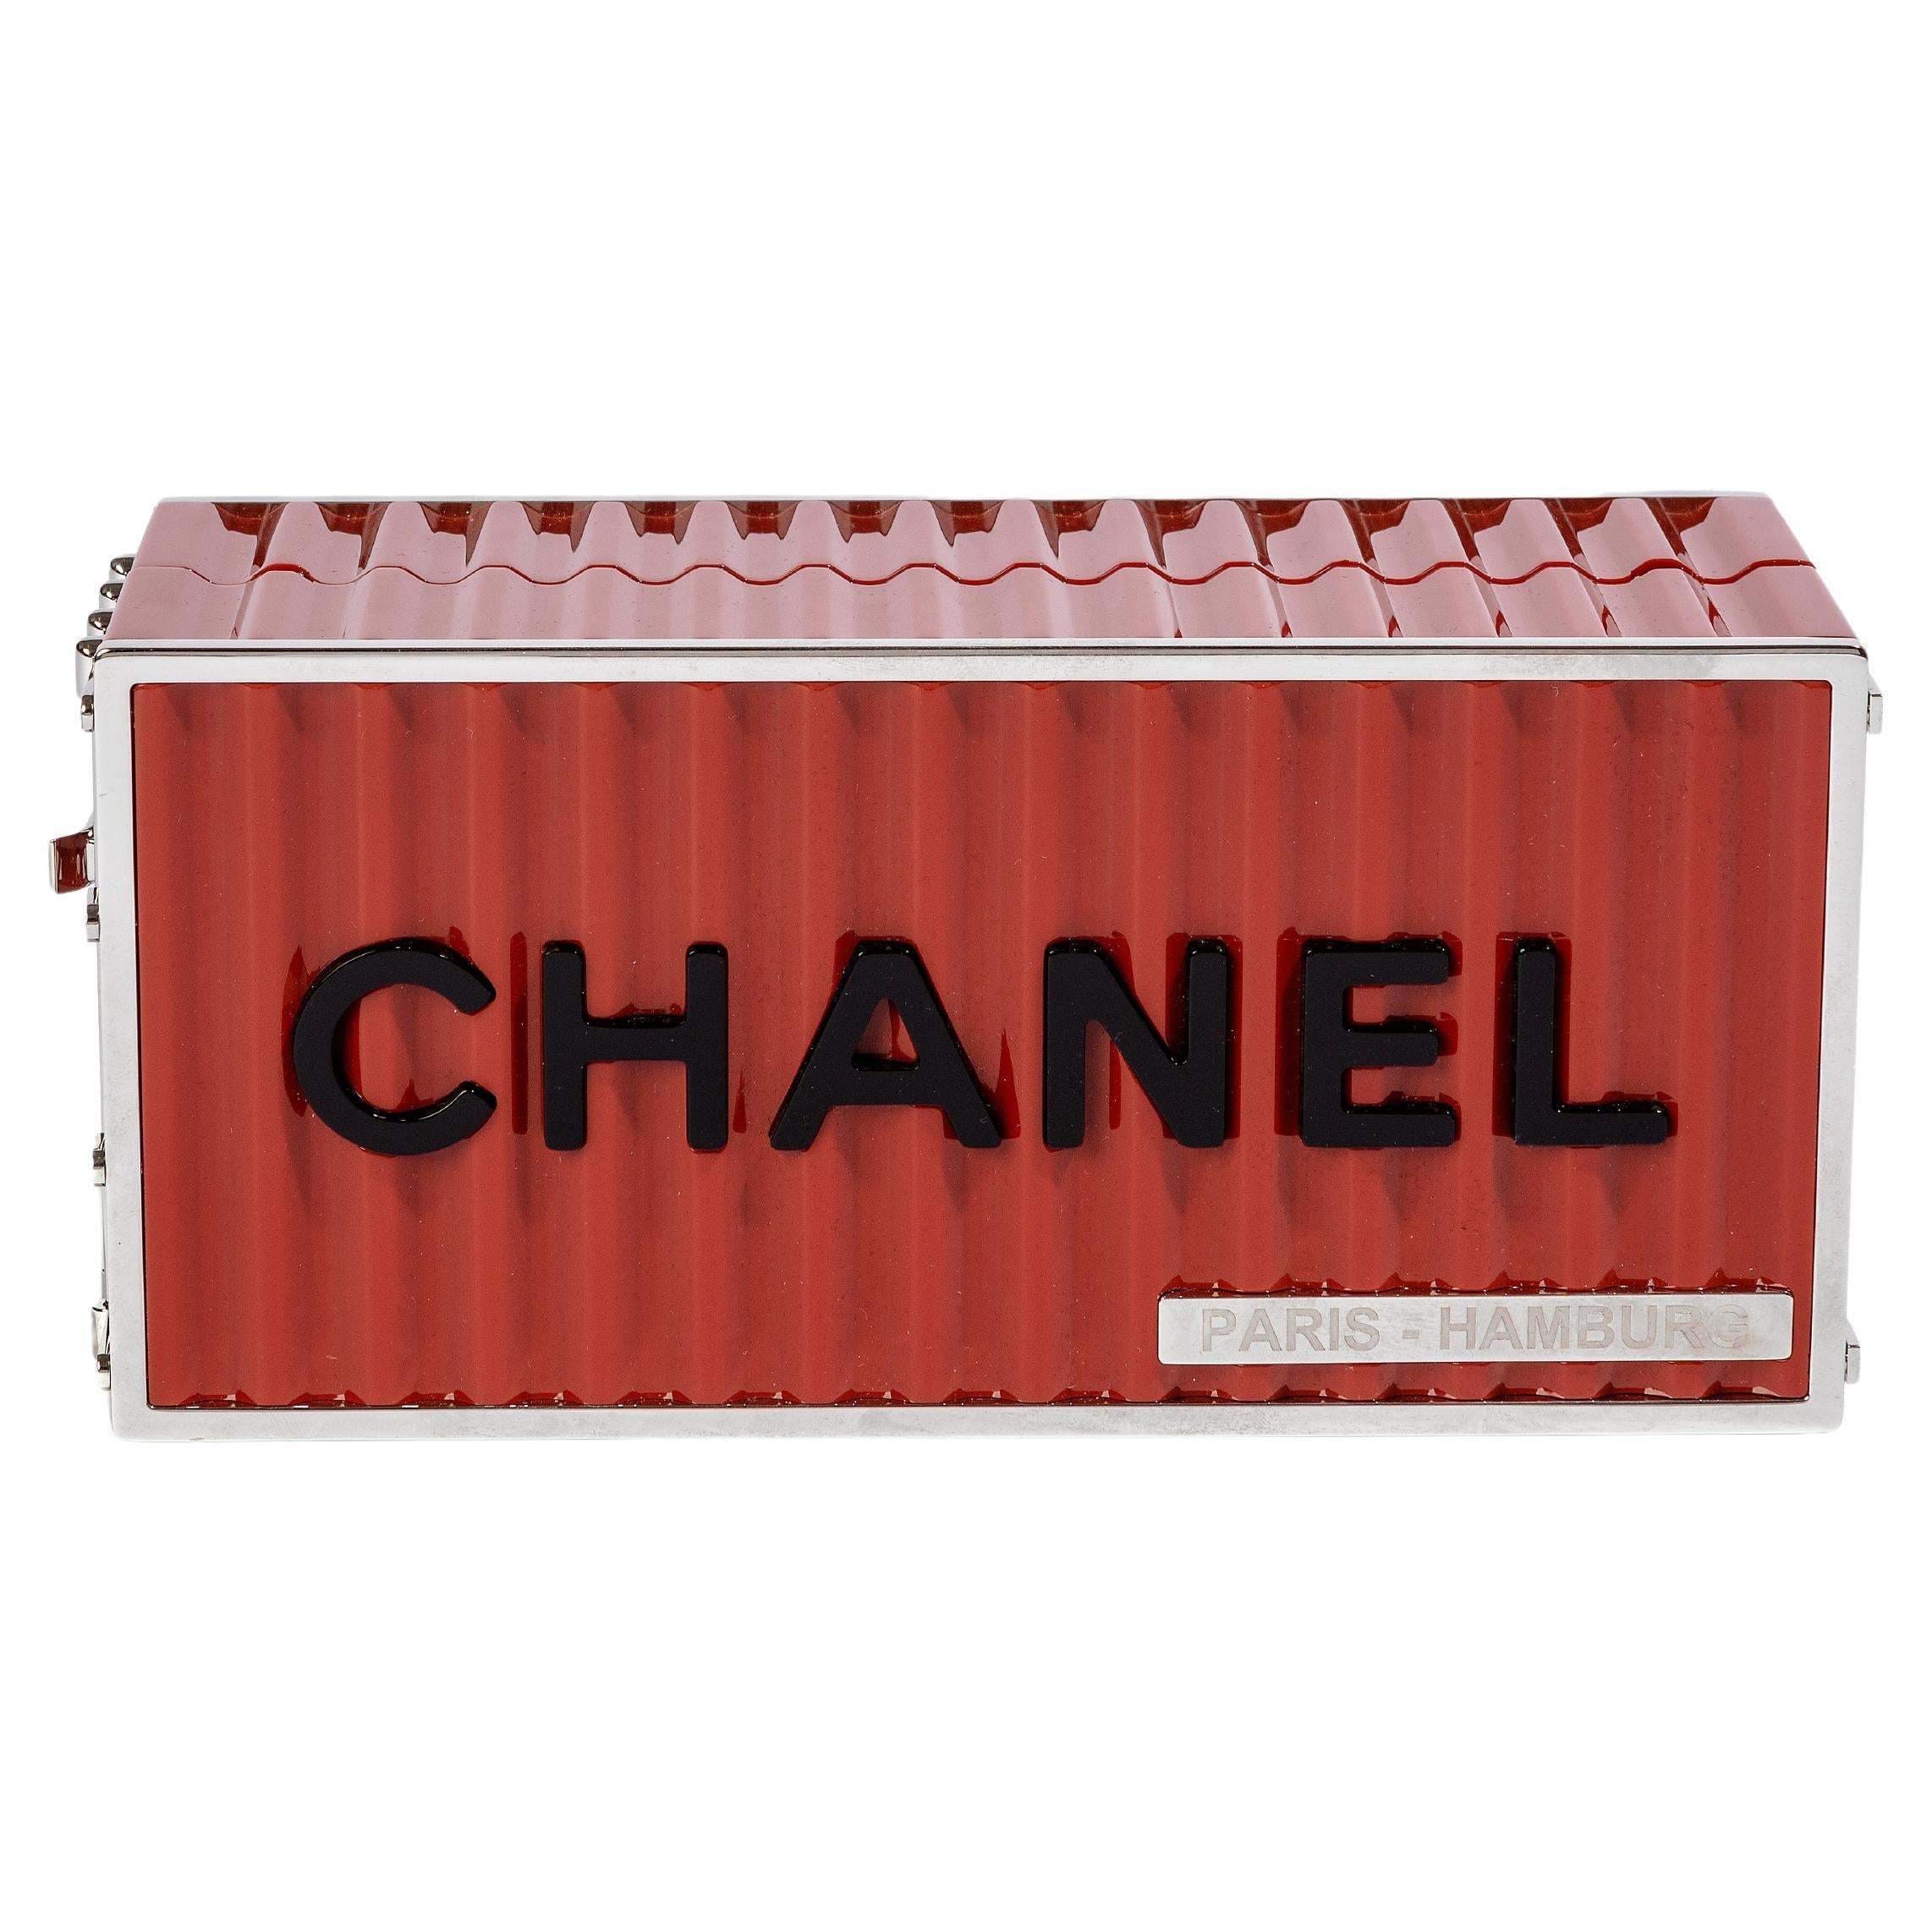 Chanel Paris Hamburg Container Minaudière Clutch Bag 2017